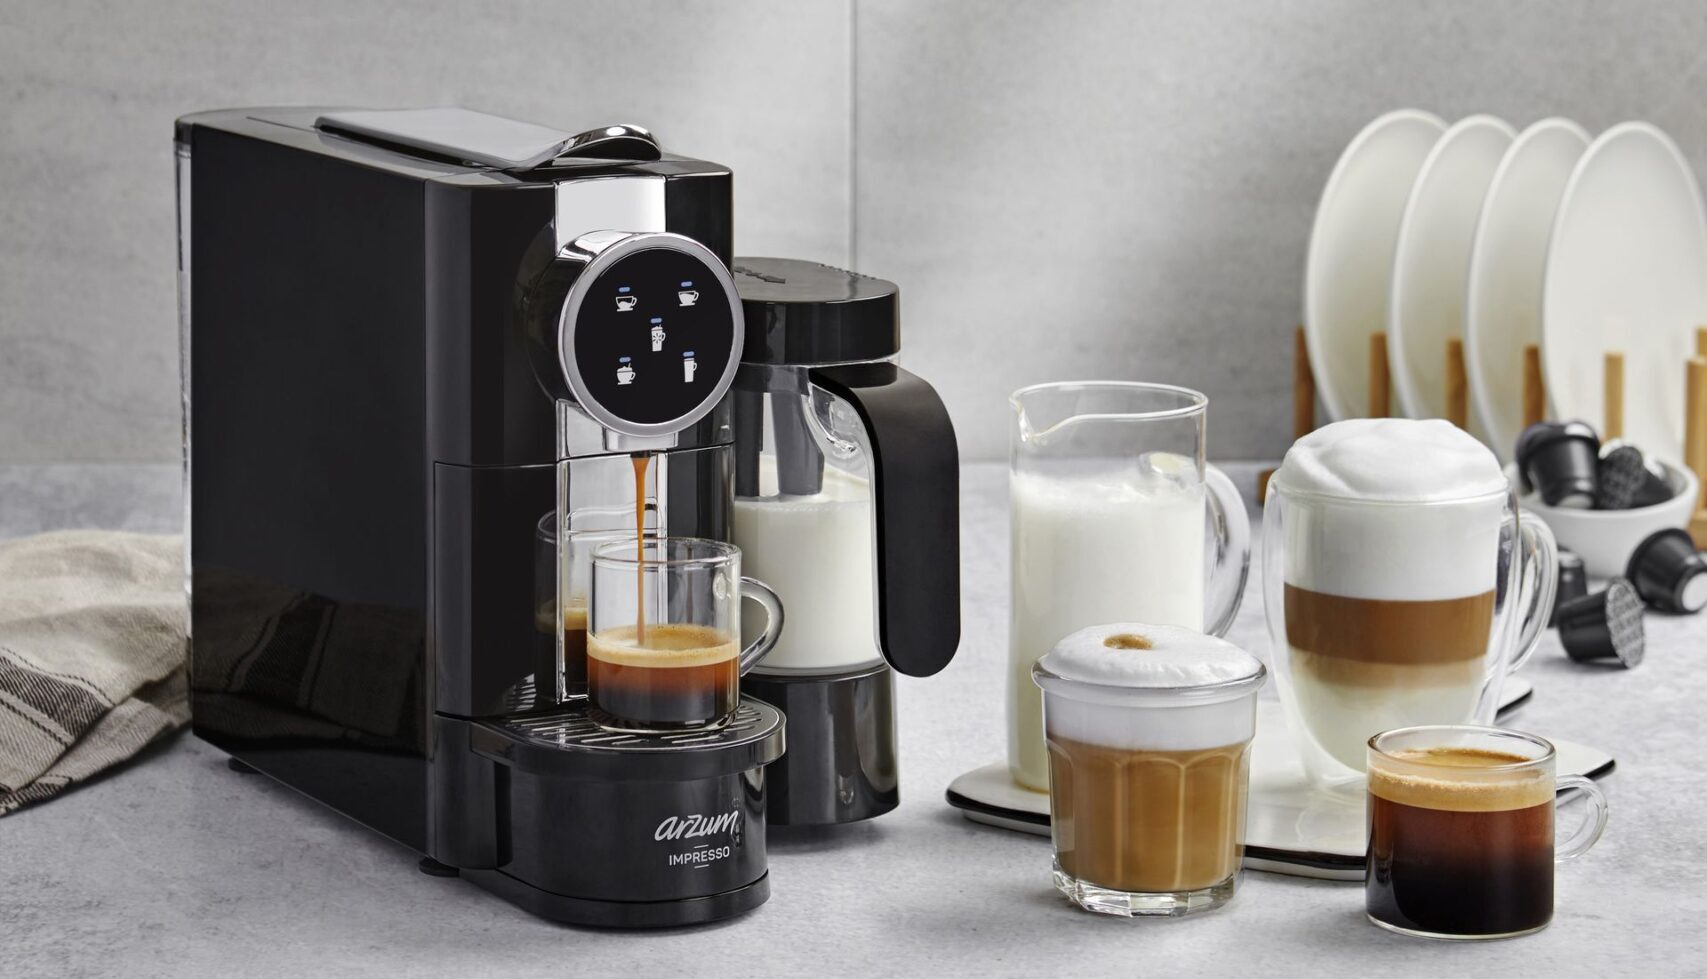 Arzum Impresso Kapsüllü Kahve Makinesi: Özellikleri, fiyatı ve çıkış tarihi